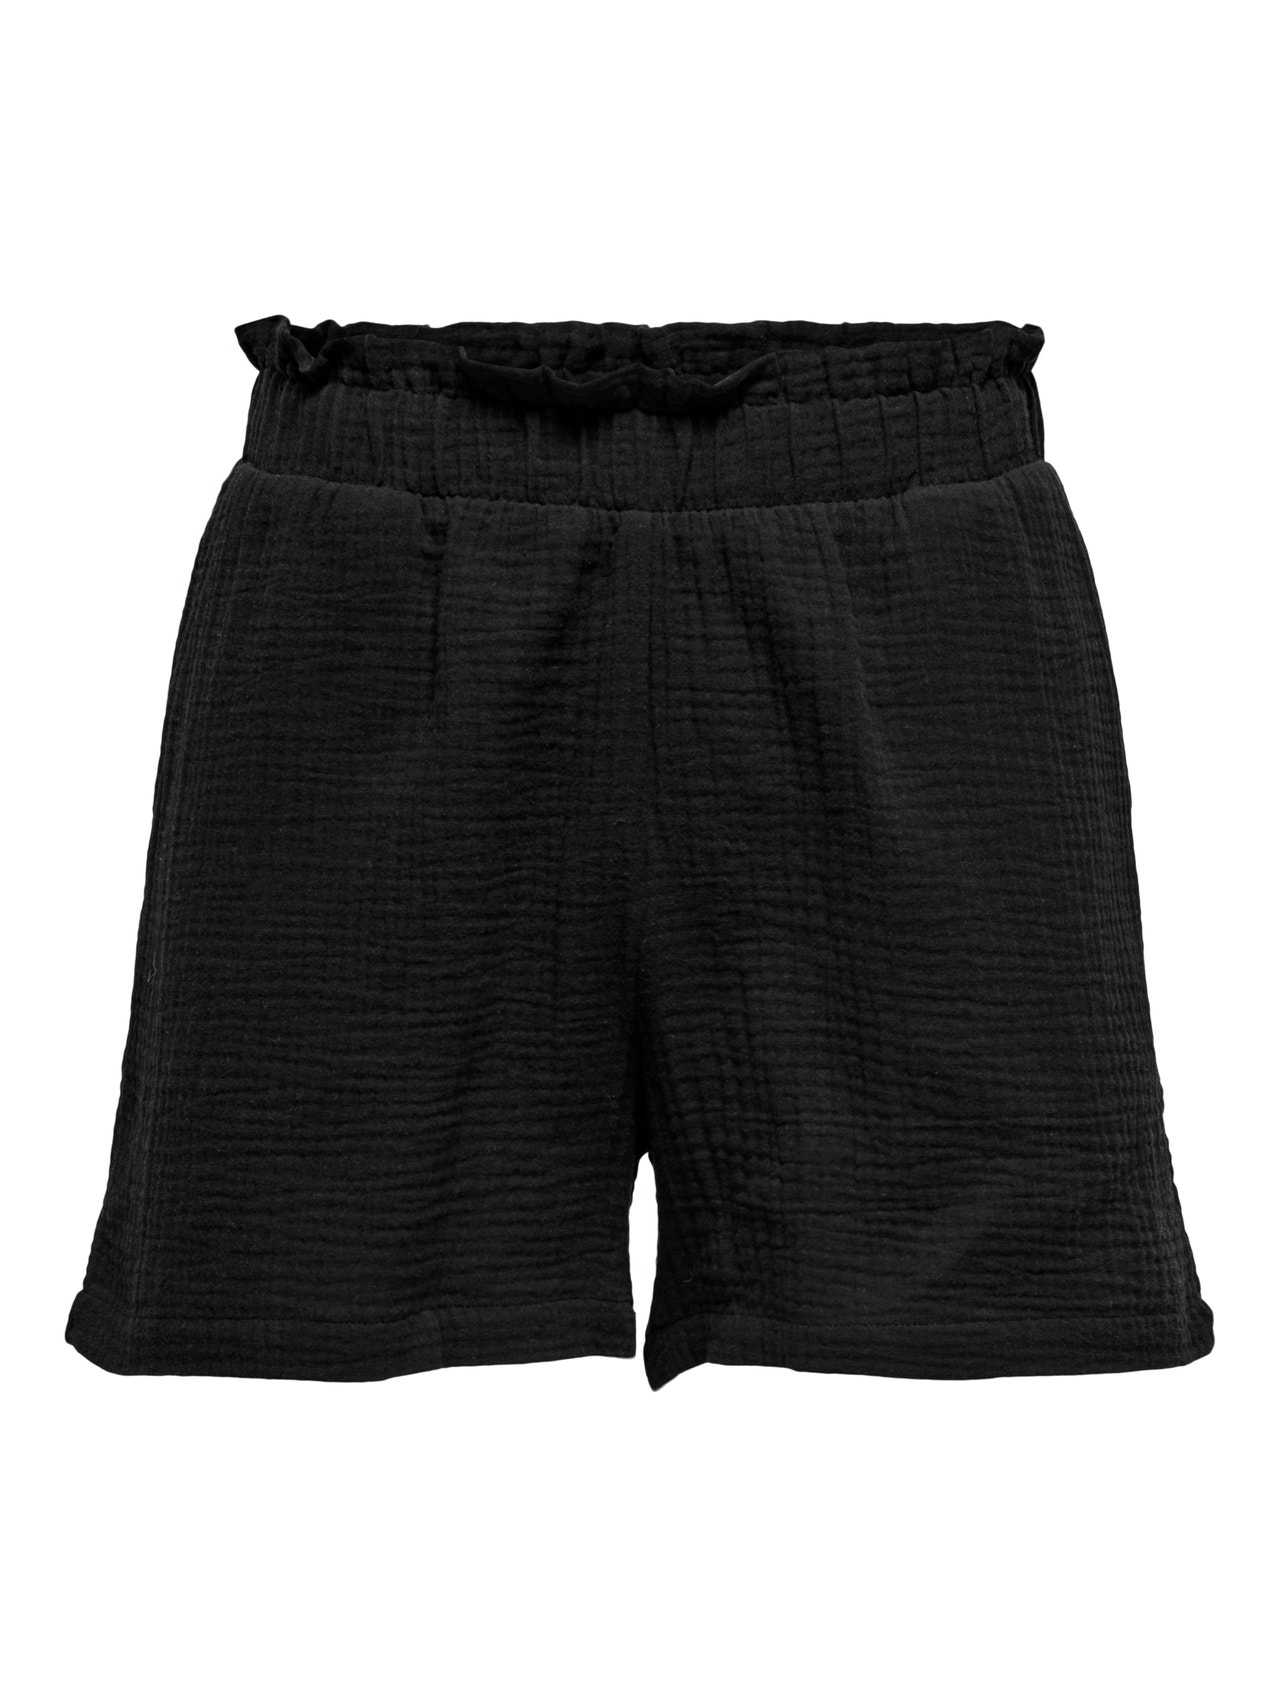 ONLY Shorts Corte regular Cintura media -Black - 15259755